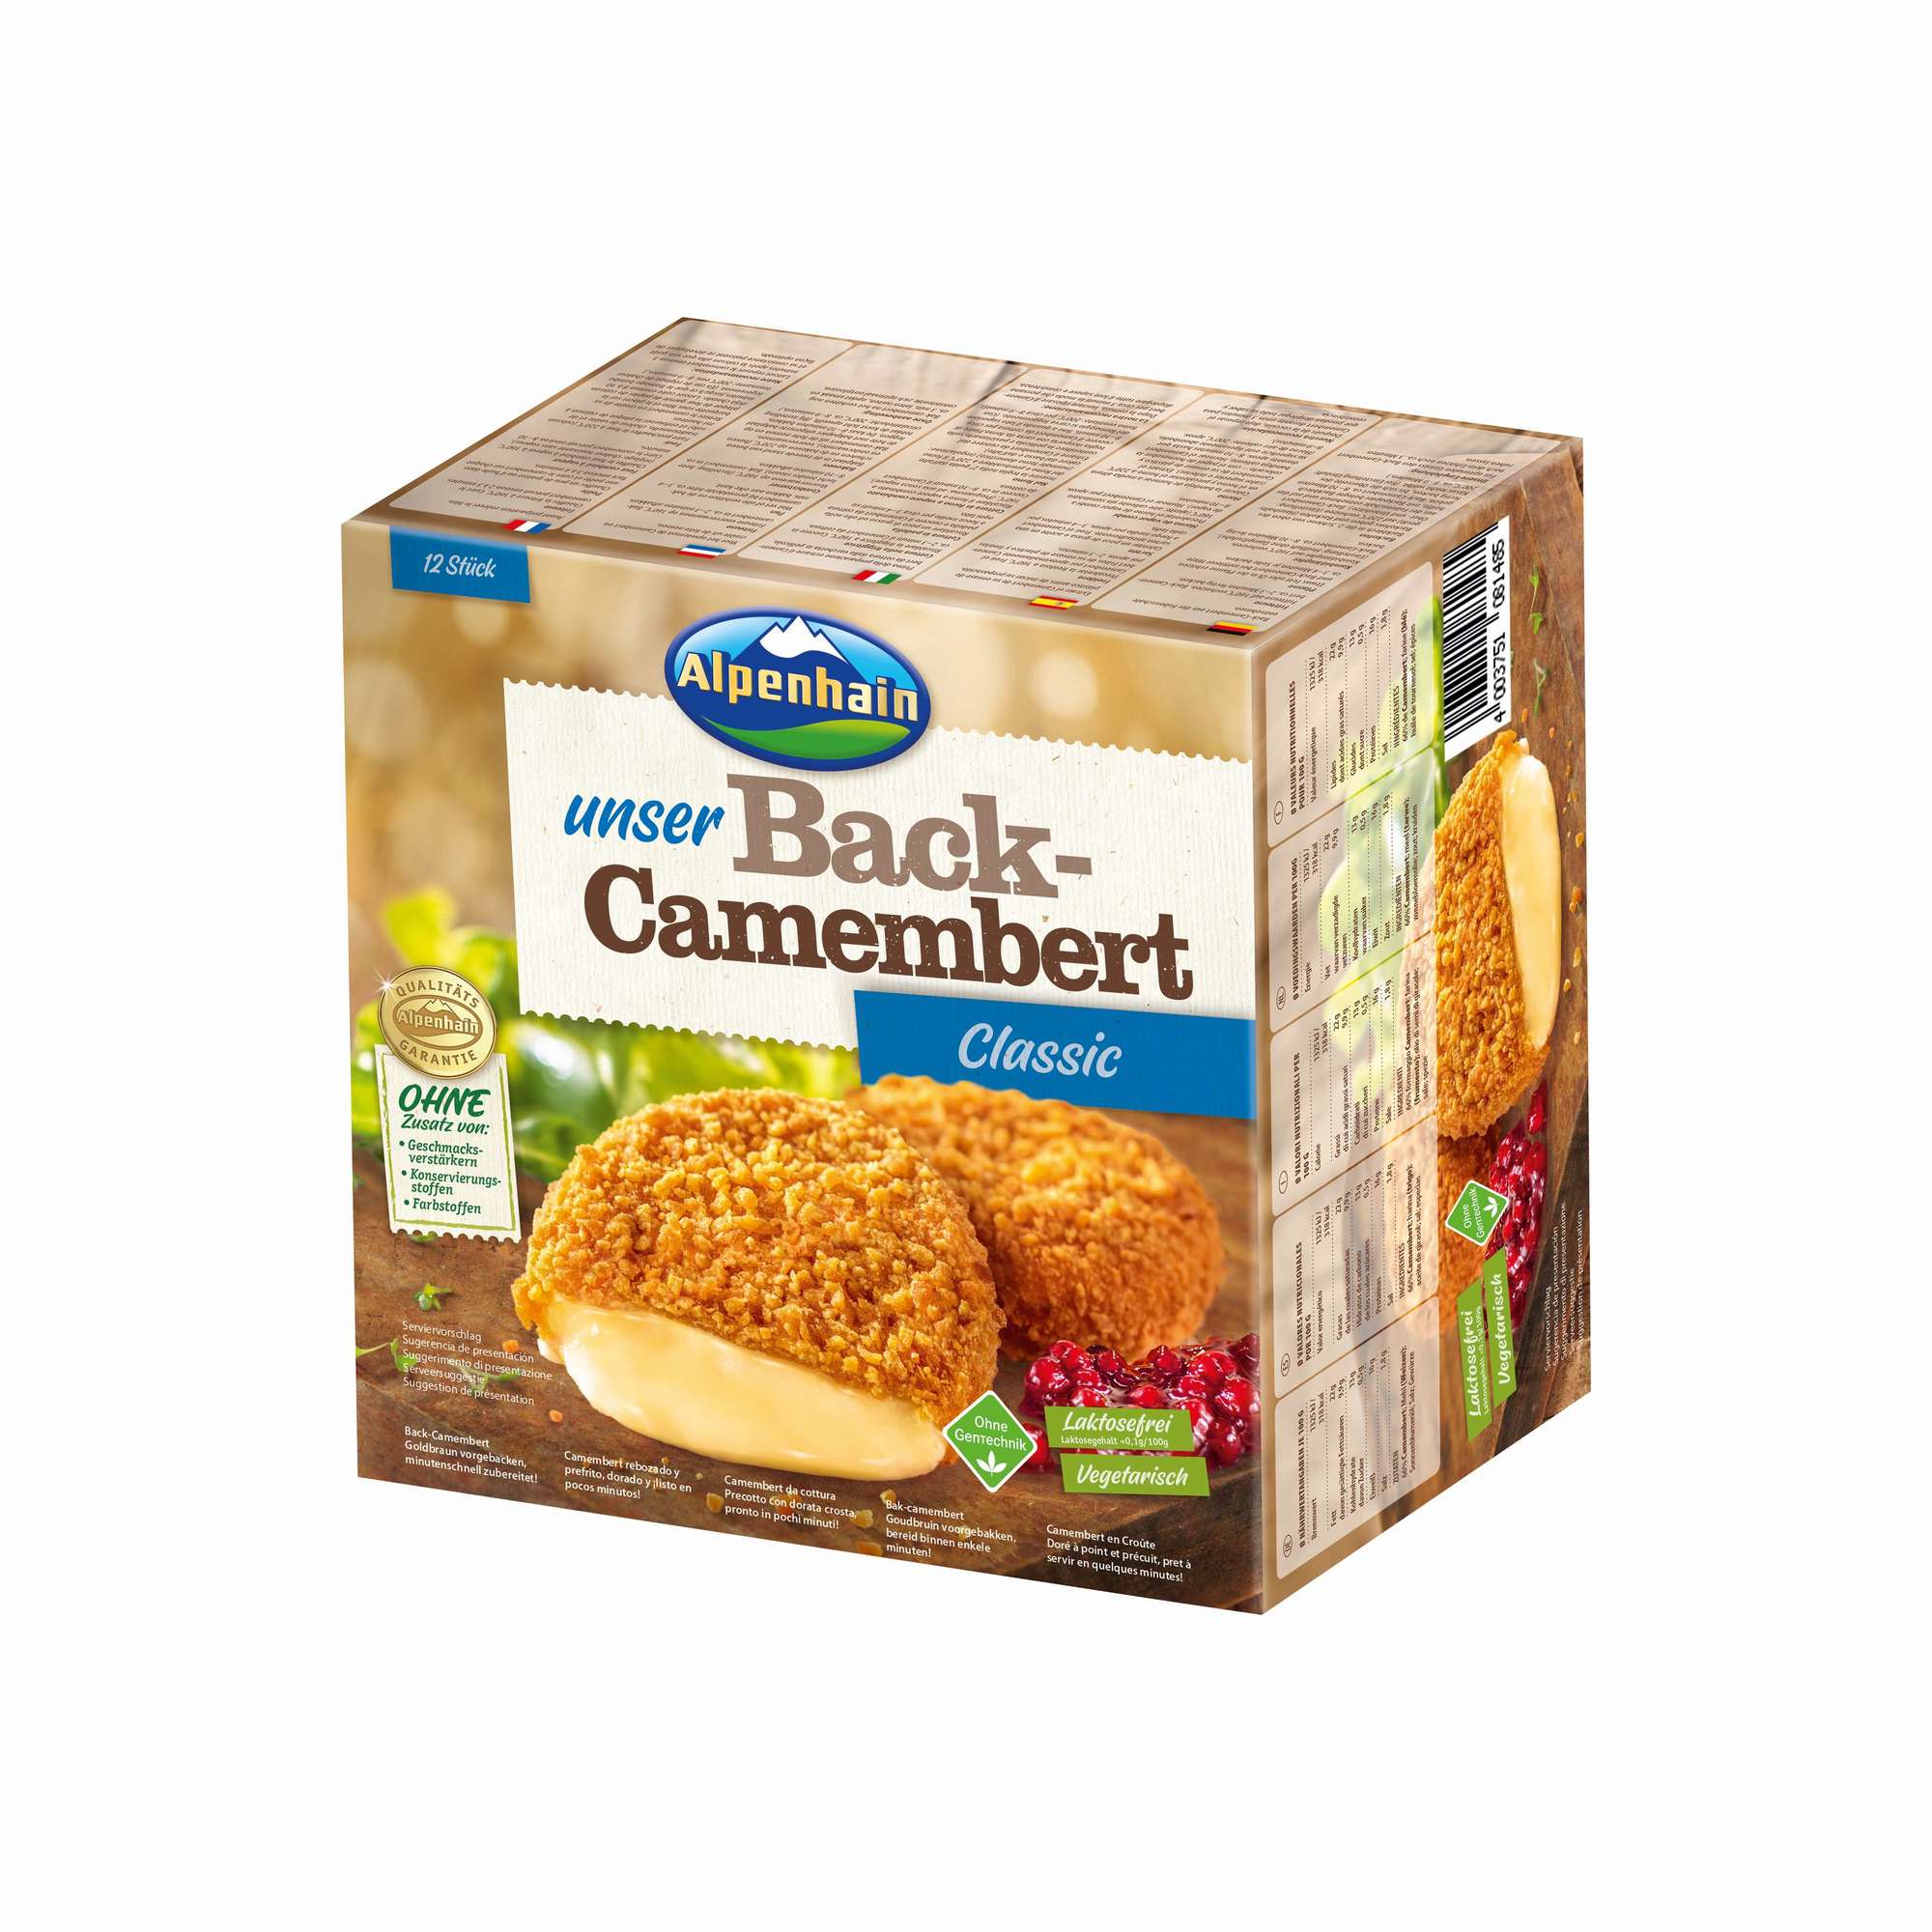 Back-Camembert 75g